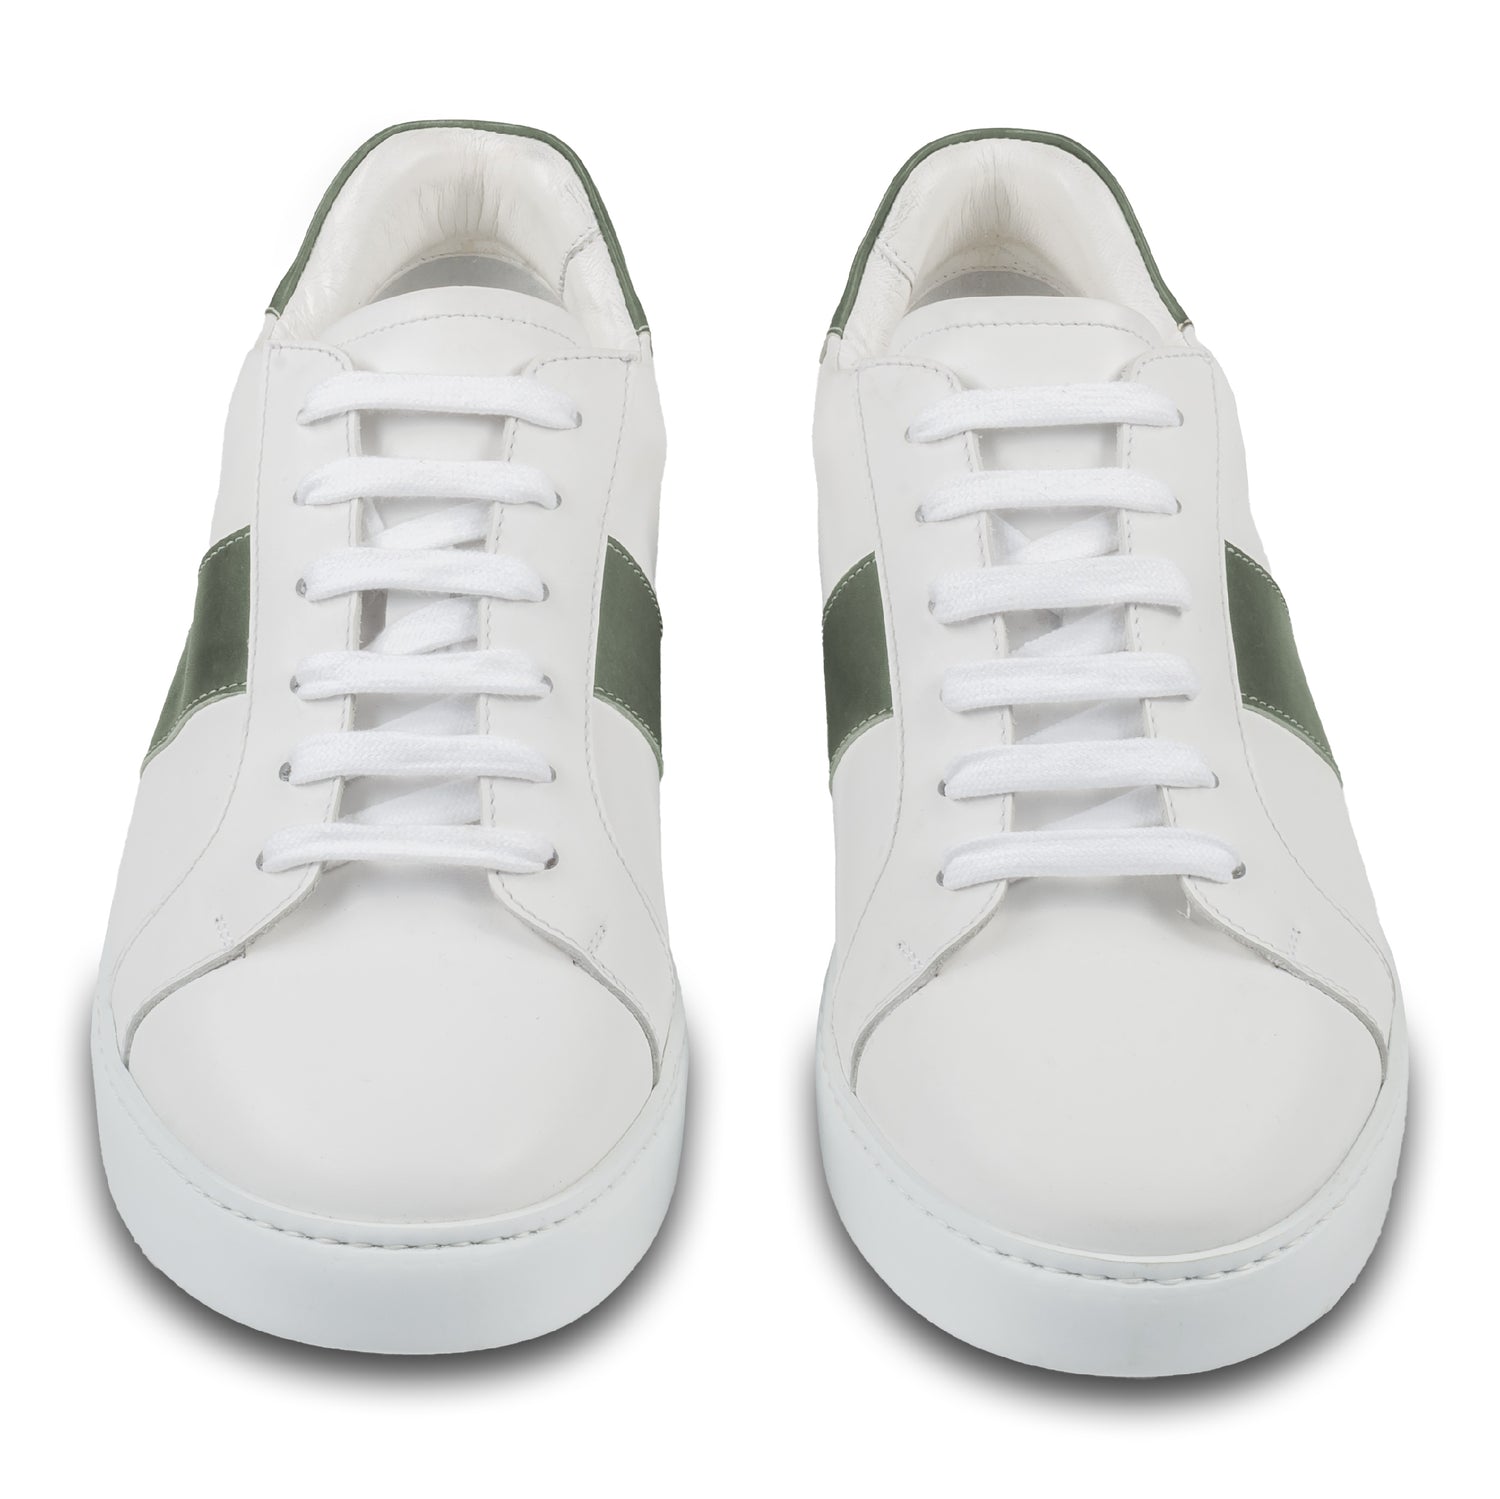 Brecos Herren Kalbsleder Sneaker in weiß mit grün. Leichte, weiße Gummisohle. Handgefertigt in Italien. Paarweise Ansicht von vorne.  